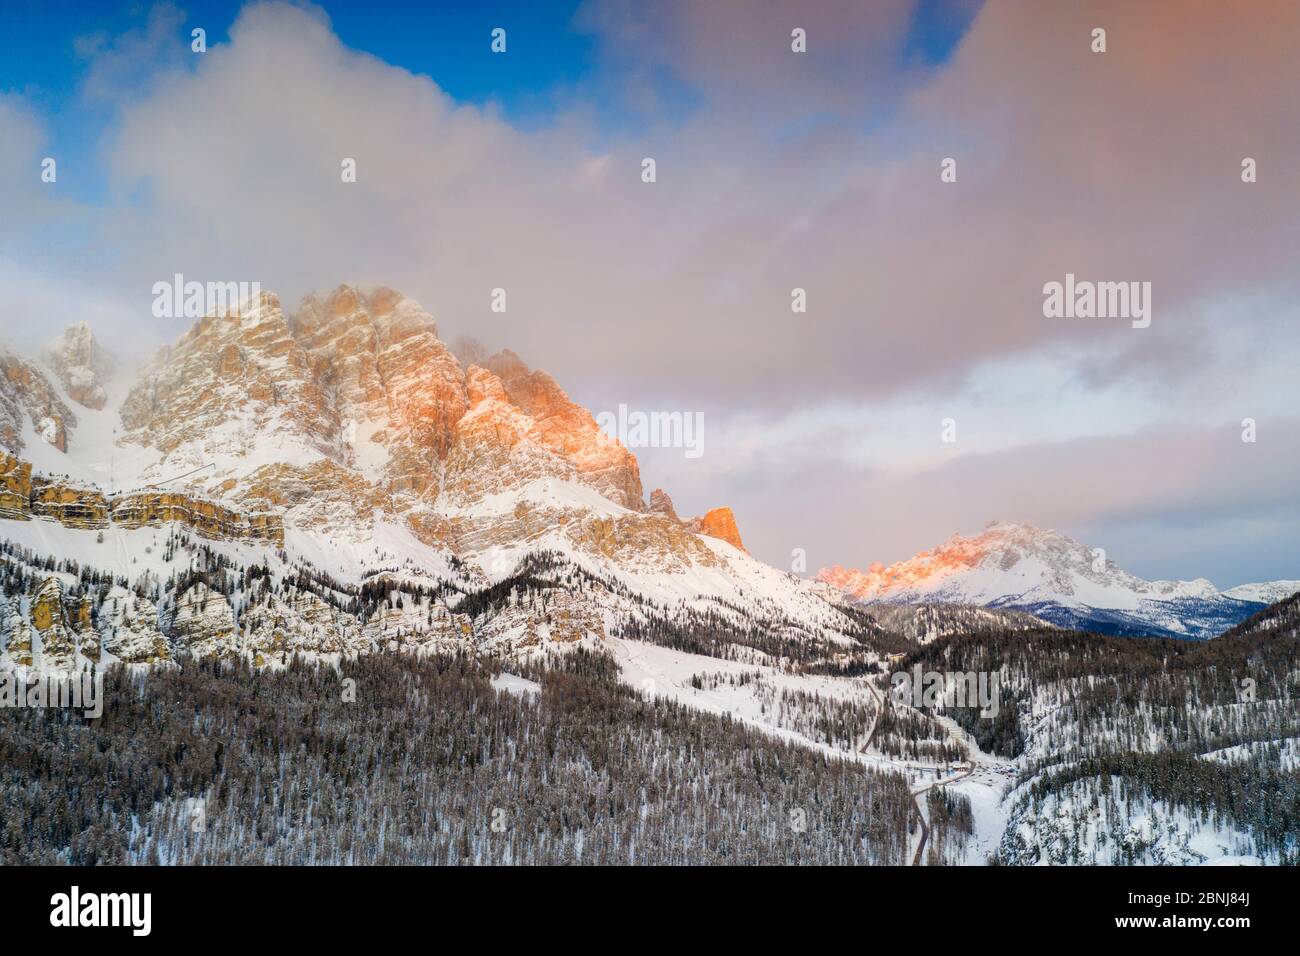 Lever de soleil sur Monte Cristallo et Passo Tre Croci entouré de bois enneigés, Dolomites, province de Belluno, Vénétie, Italie, Europe Banque D'Images